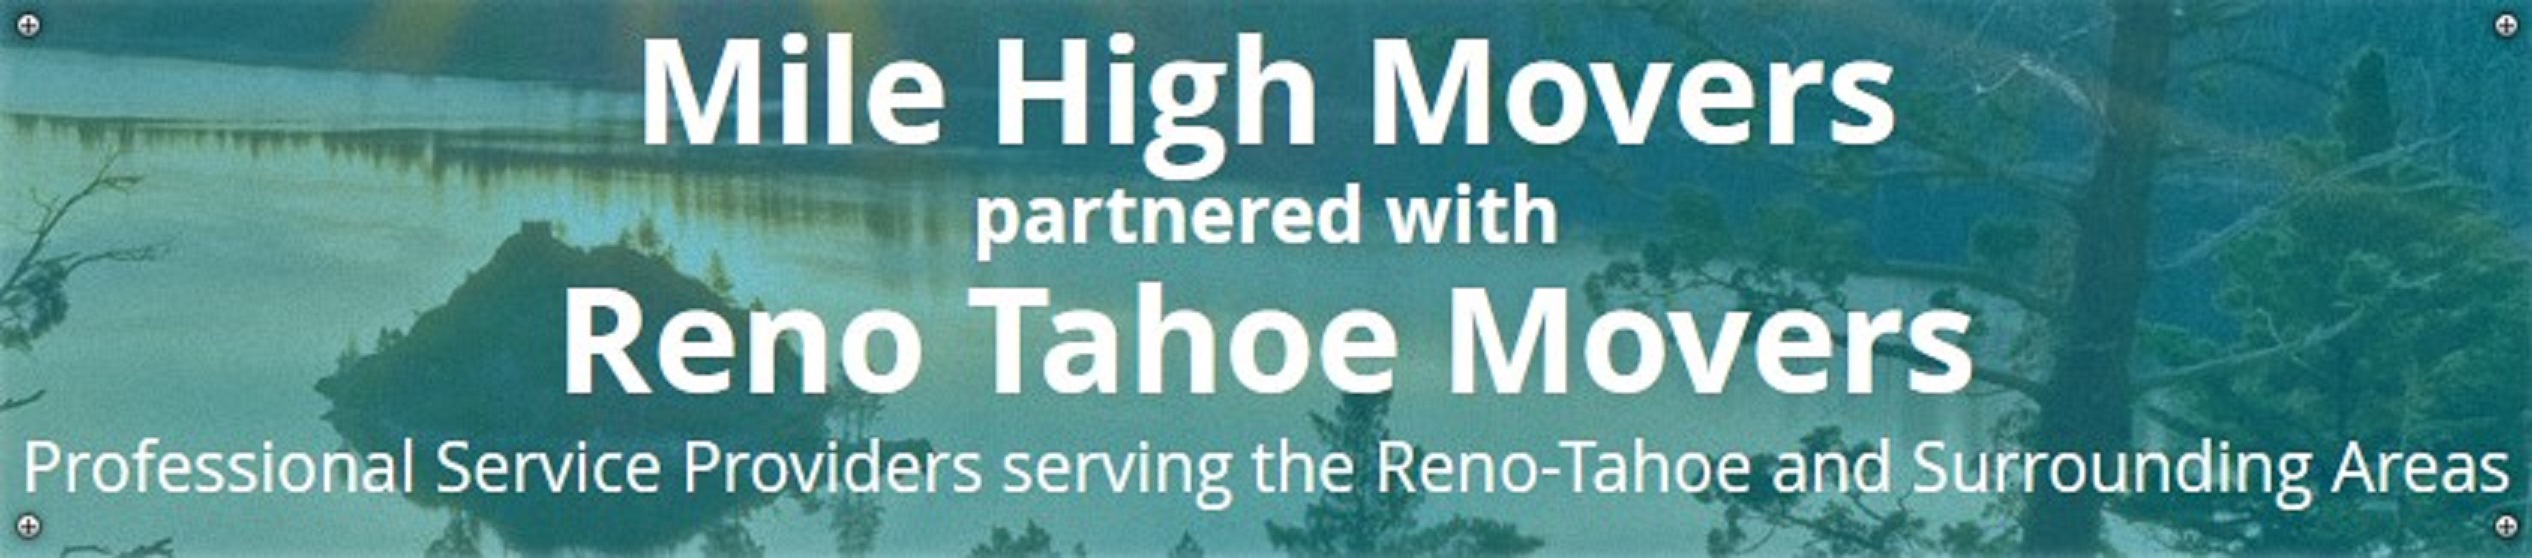 Reno Tahoe Movers company logo